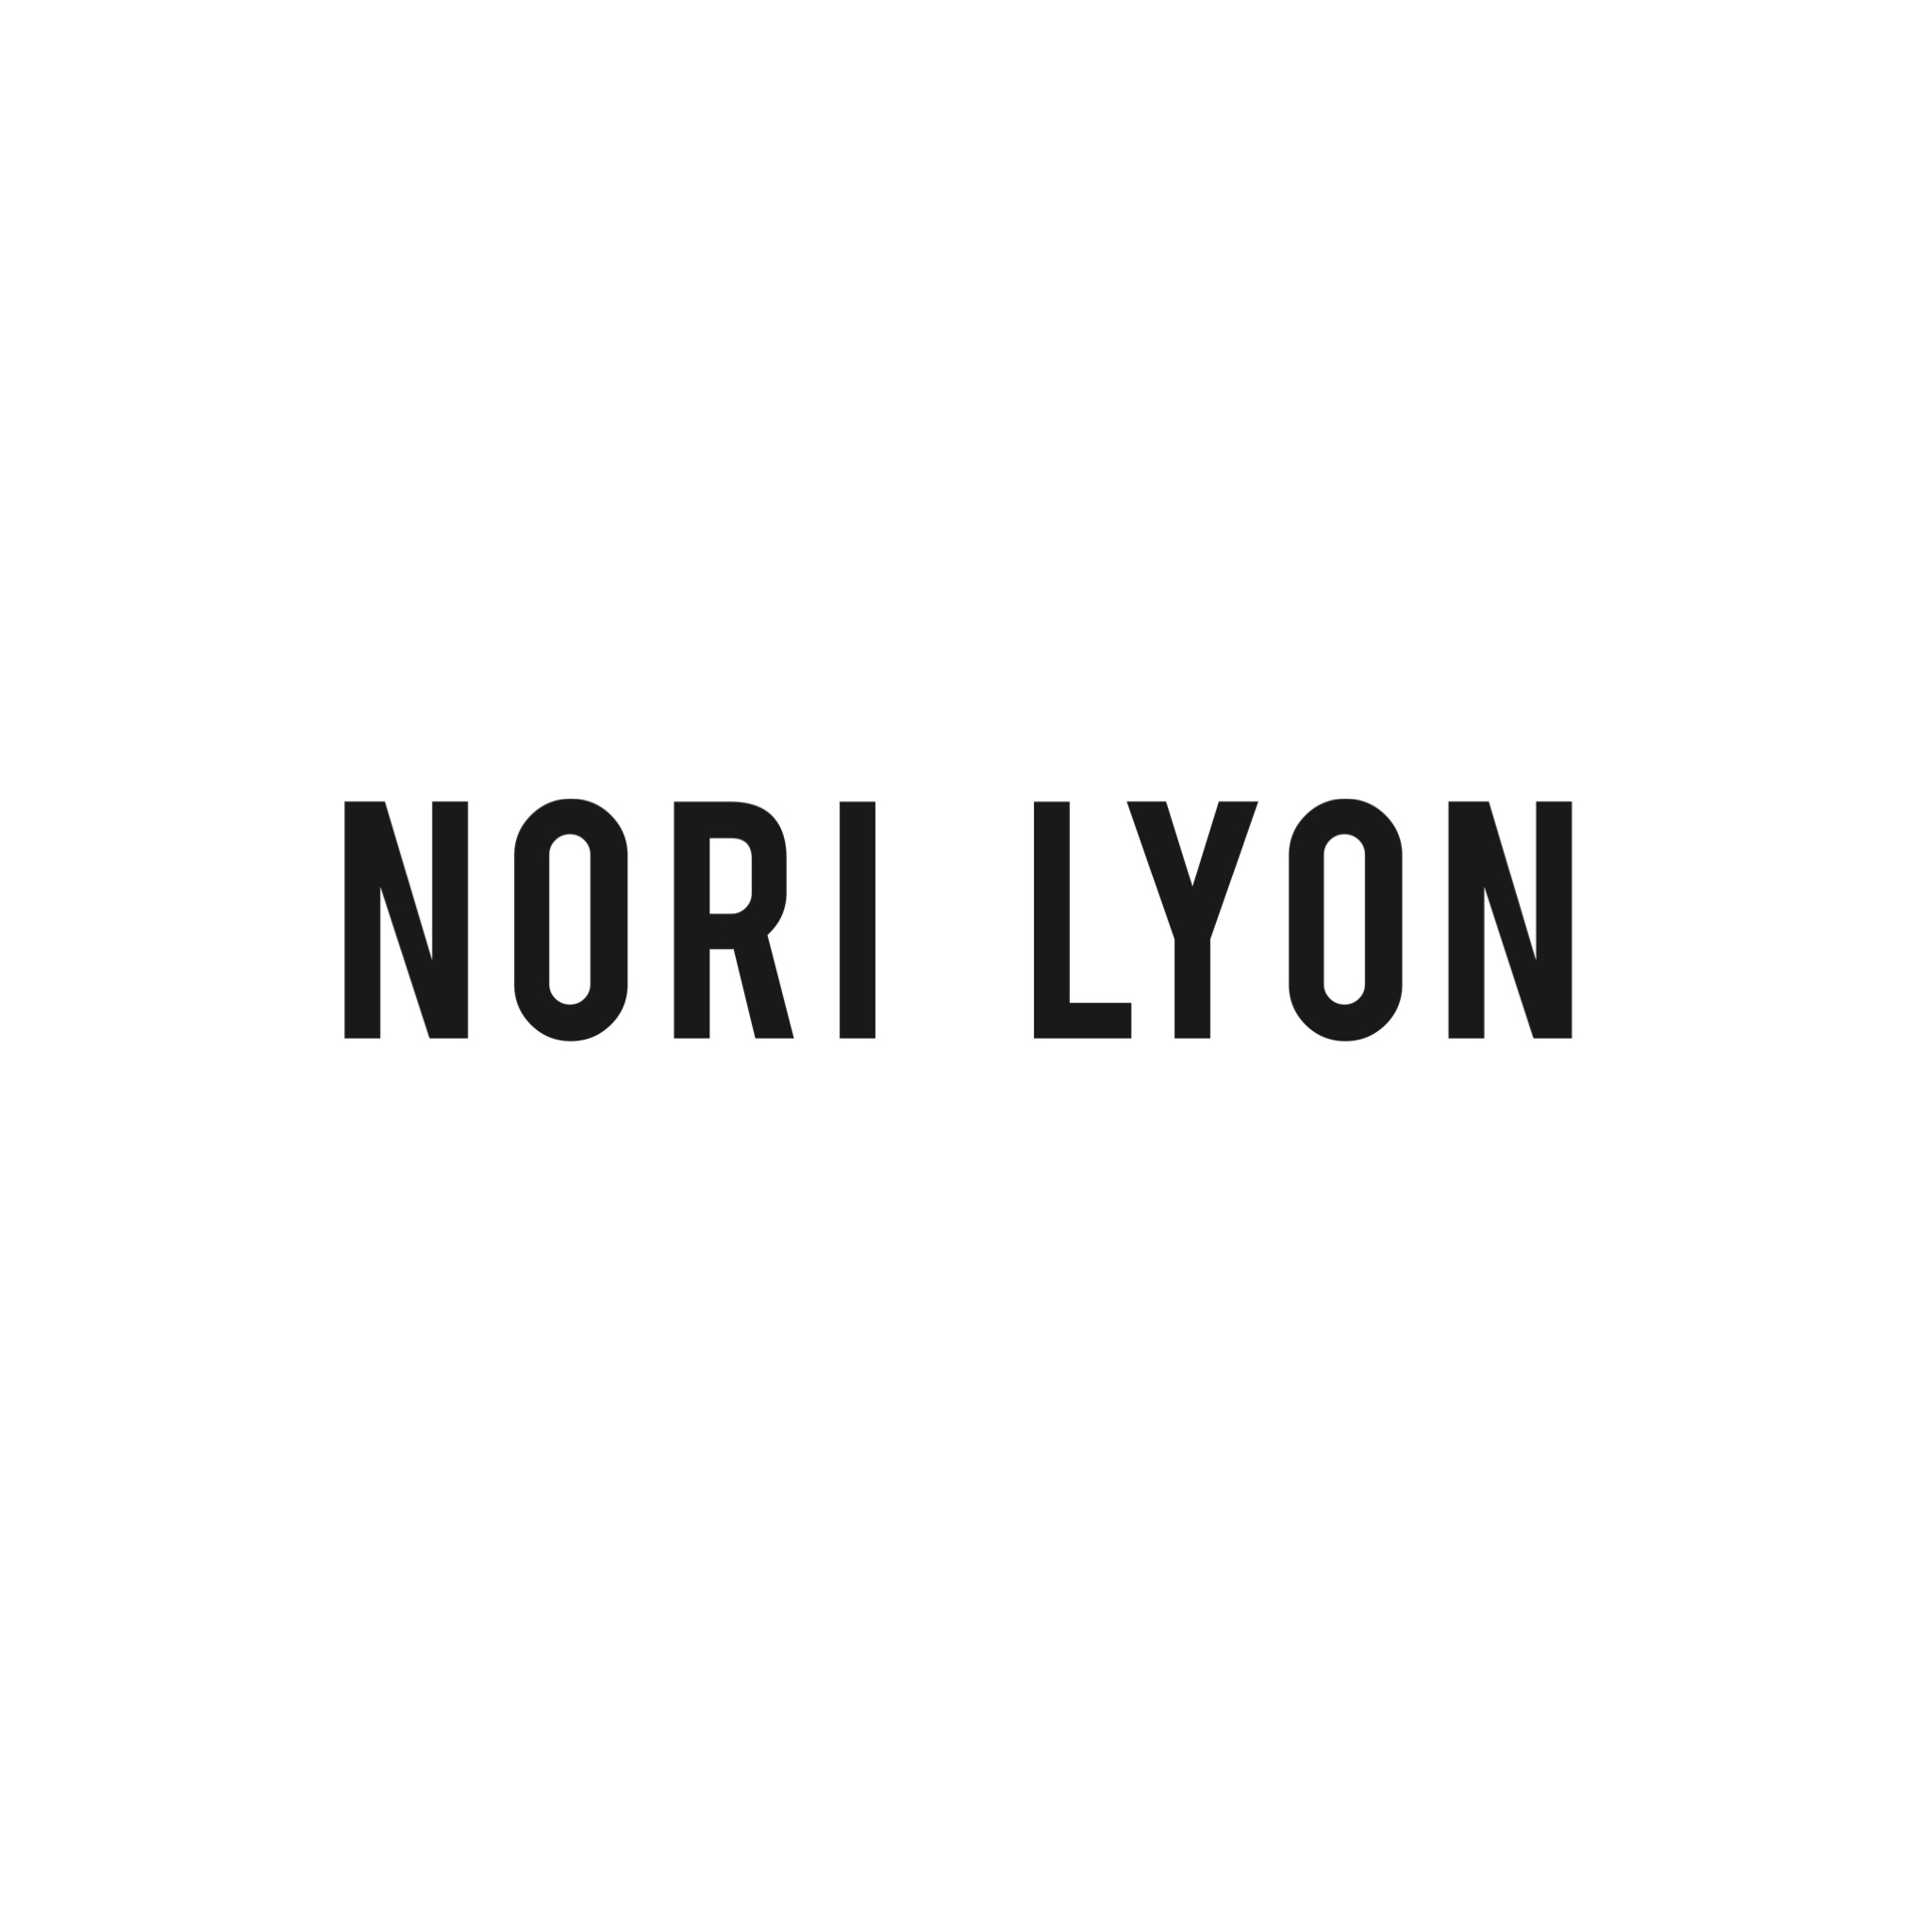 Nori Lyon: Instagram’s Trendiest Makeup Line